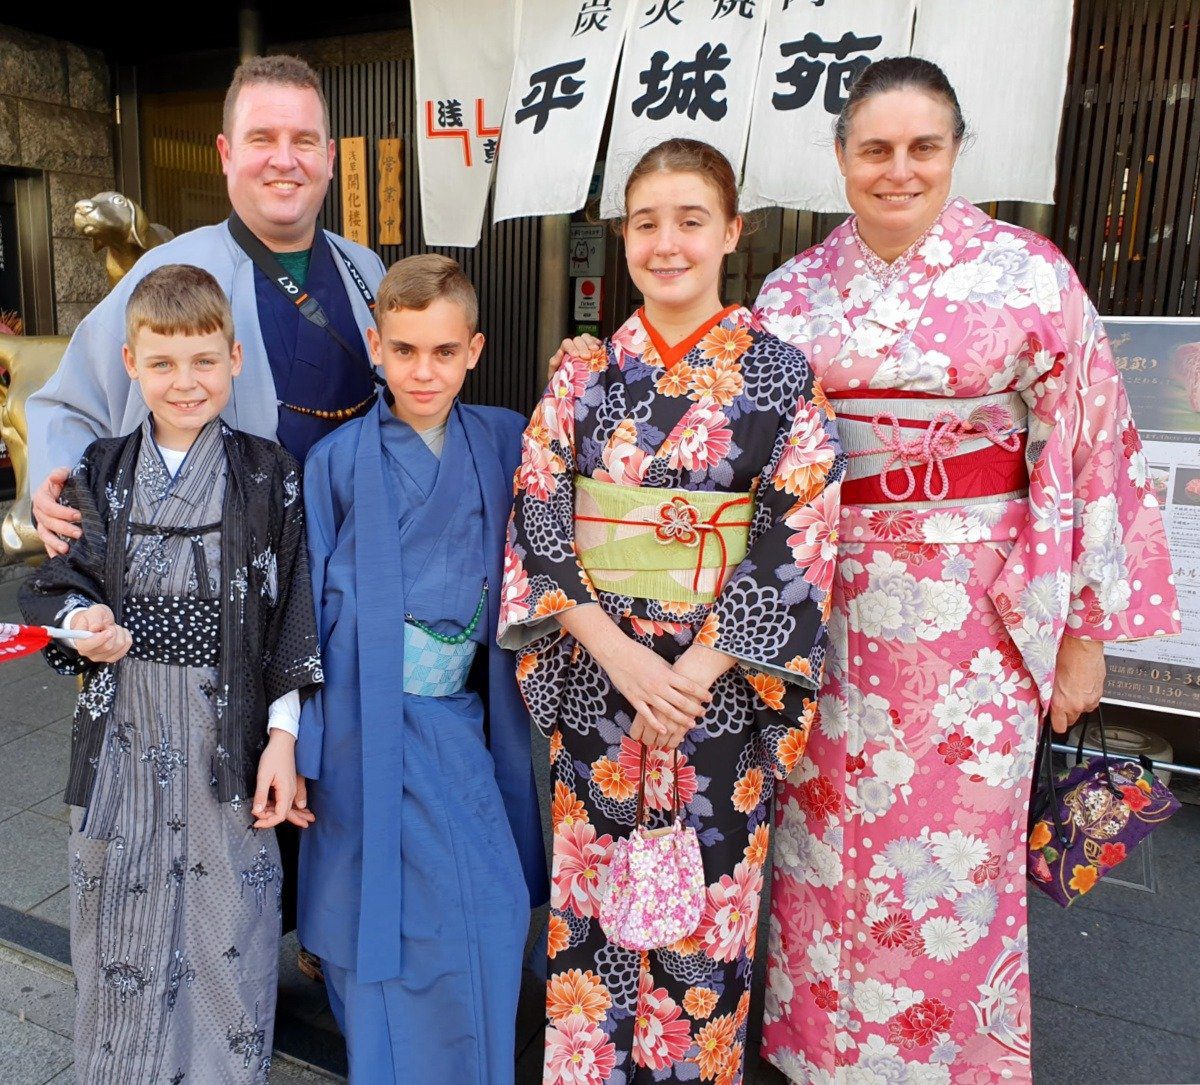 Our family dressed in kimonos in Asakusa!